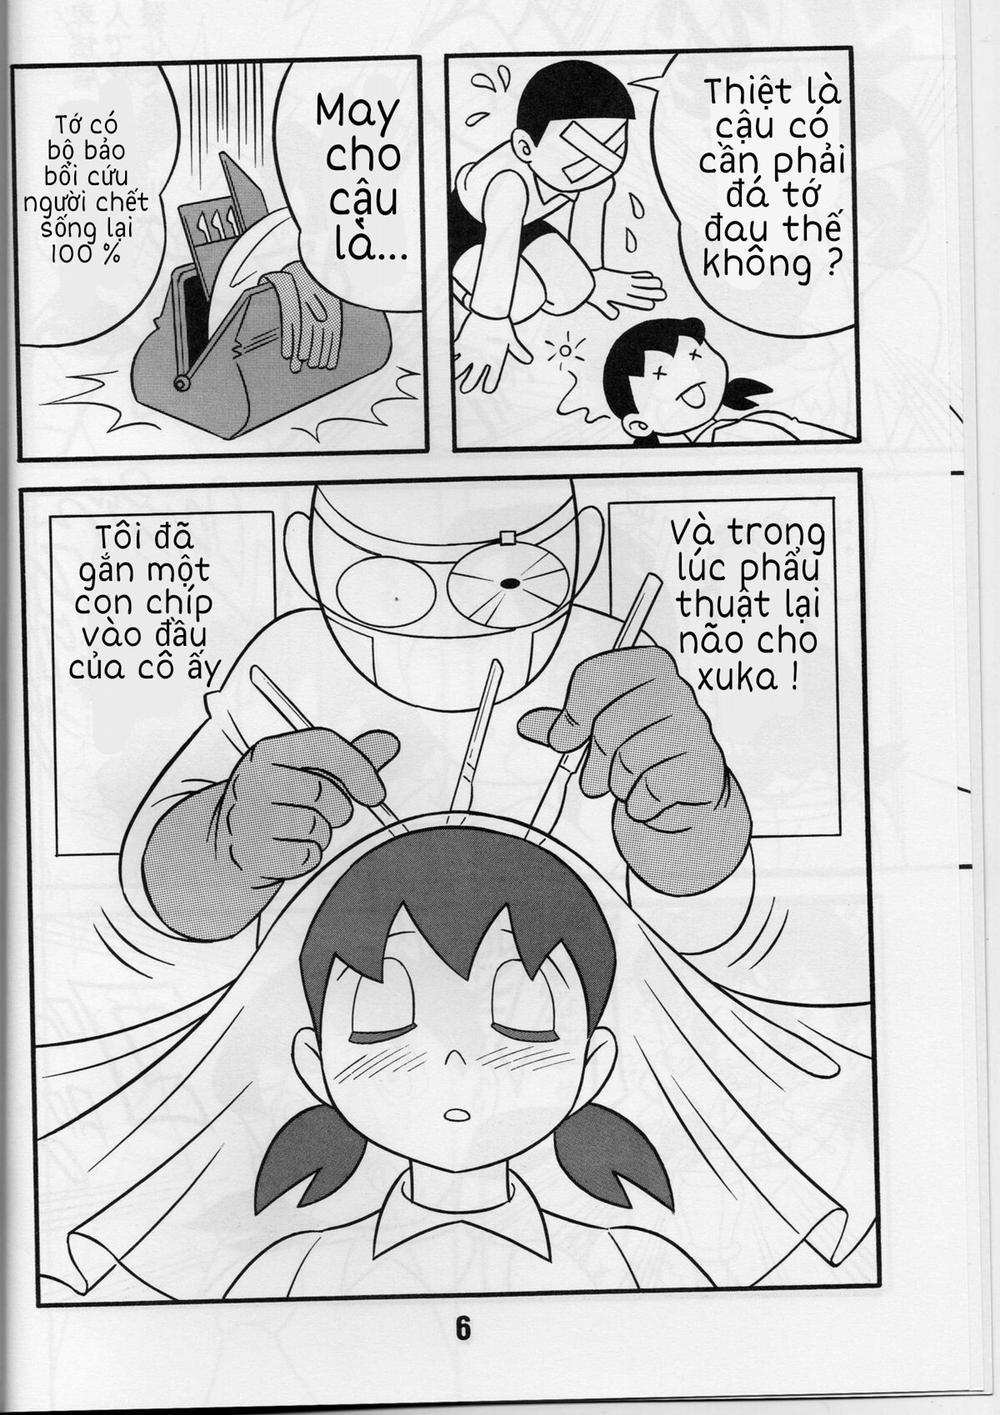 Tuyển Tập Doraemon Doujinshi 18+ Chương 1 M u c a t t c Trang 5